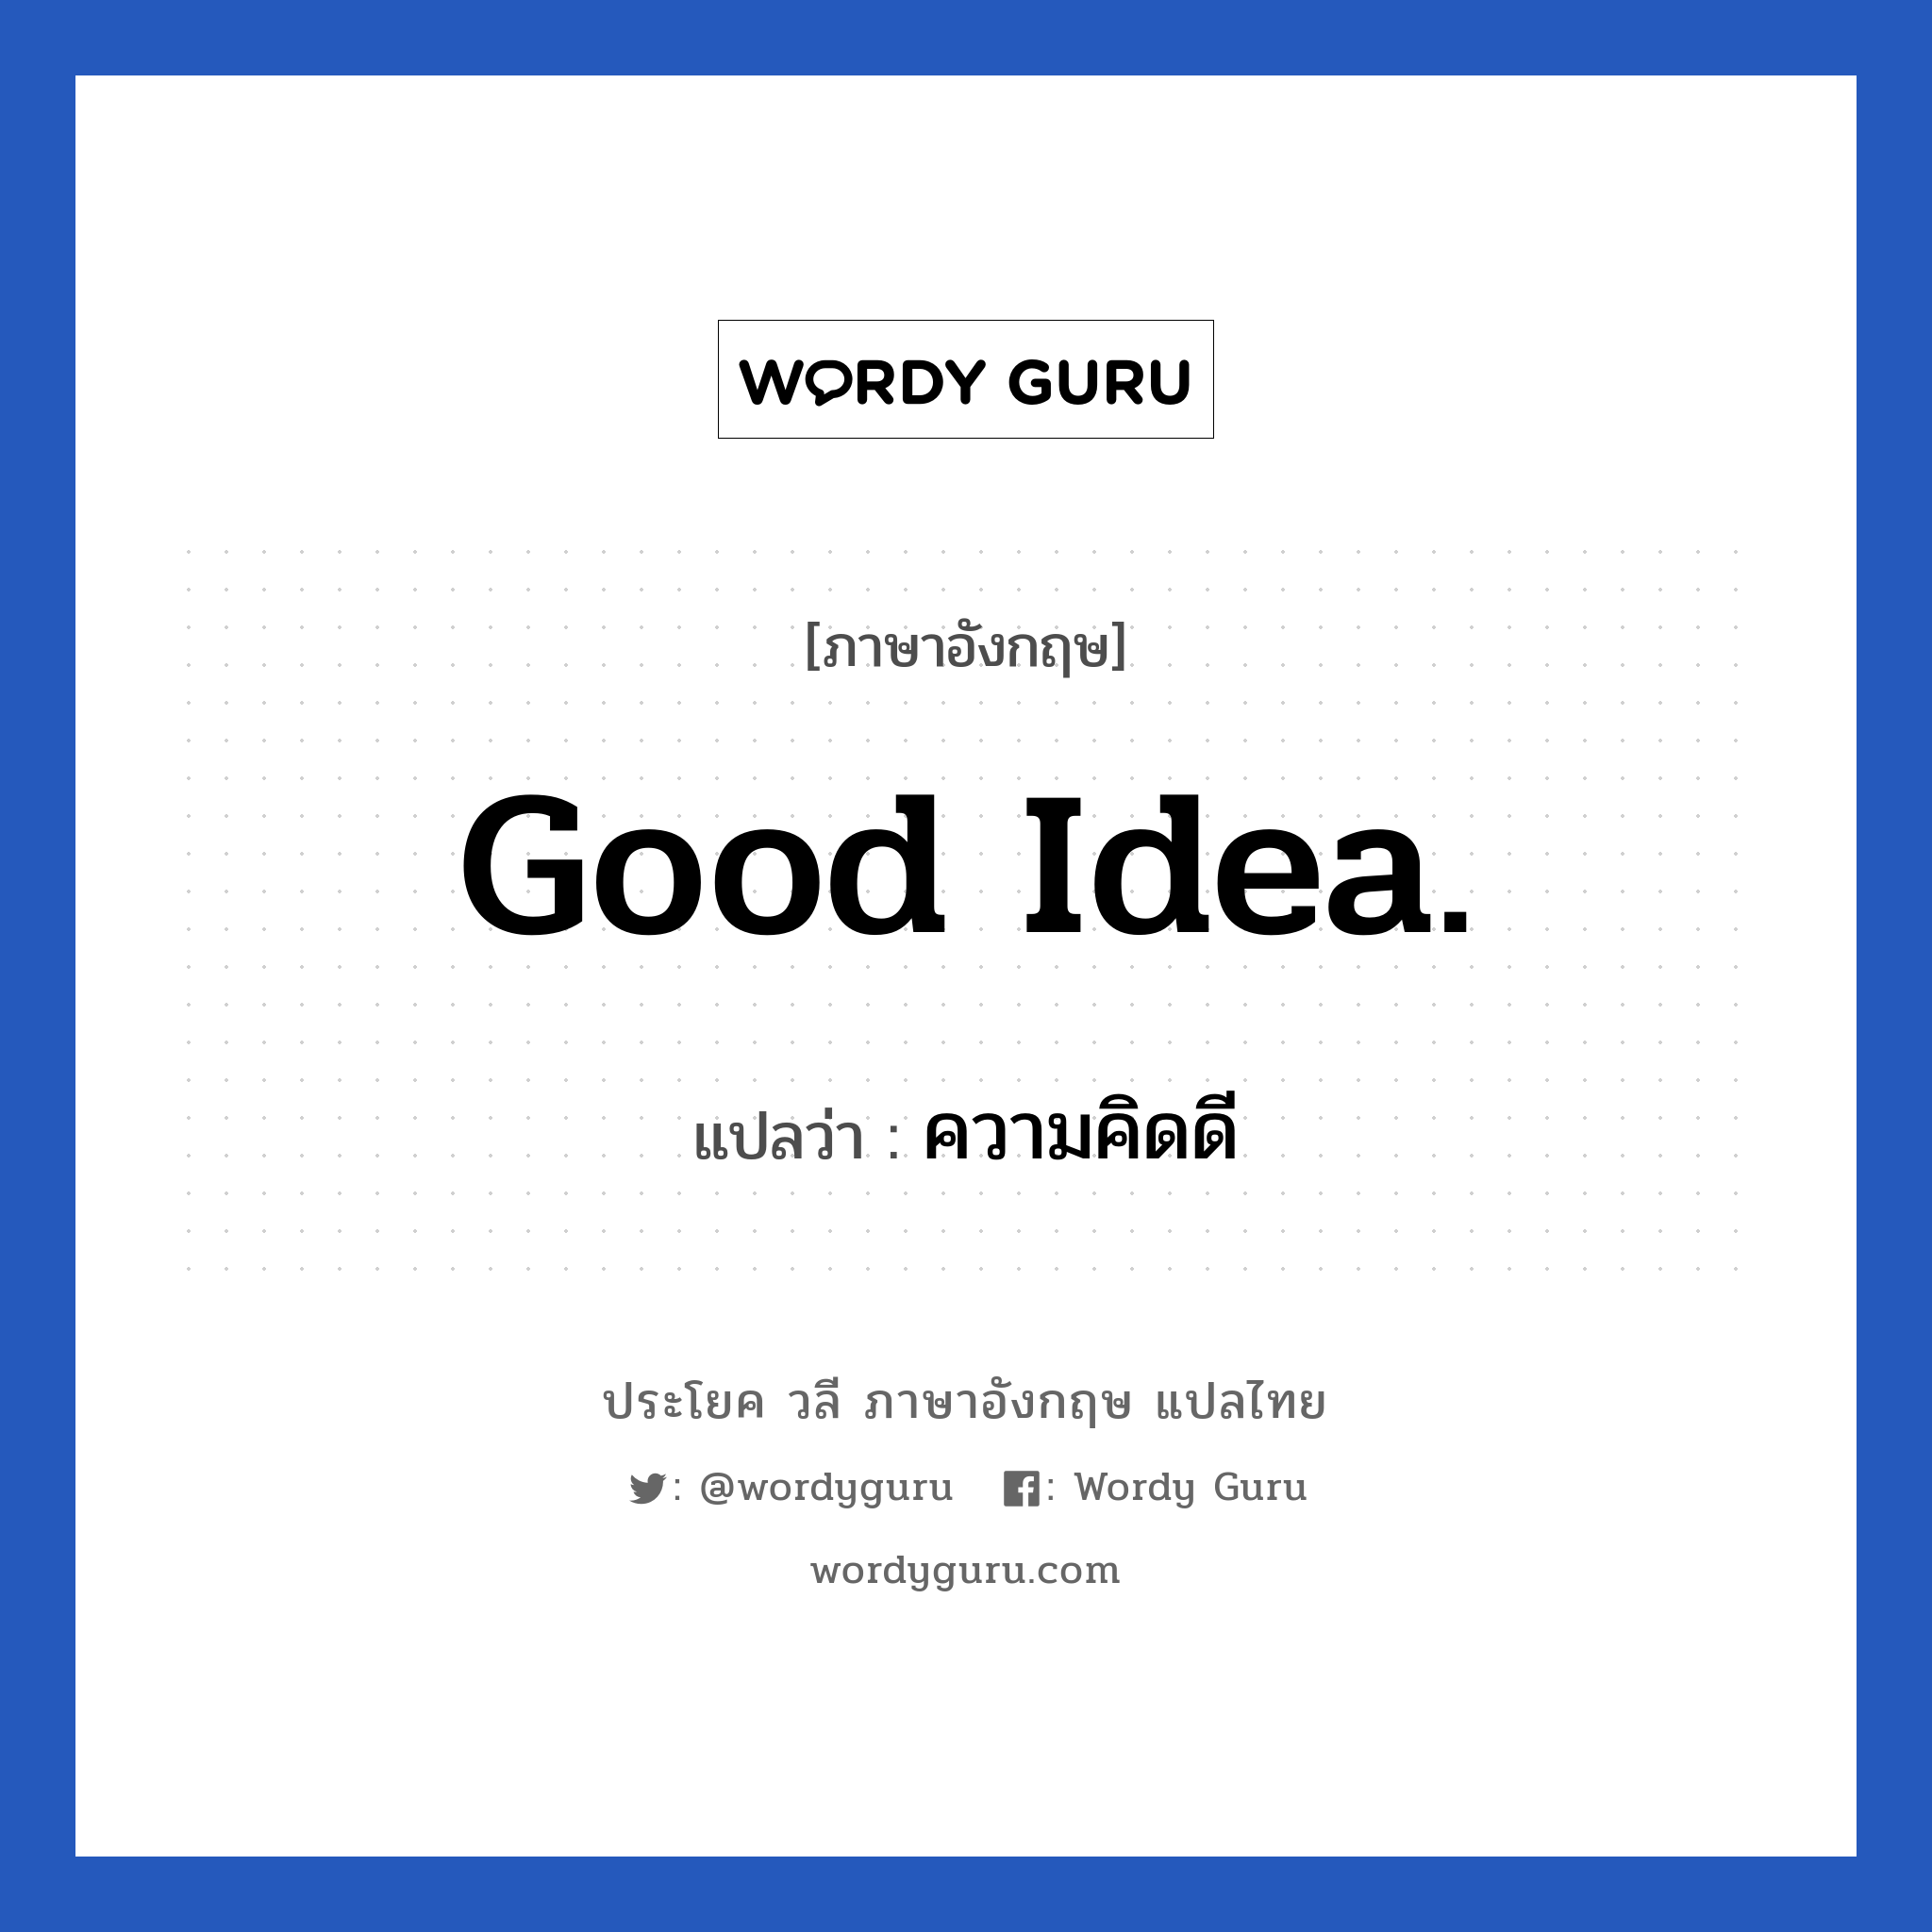 ความคิดดี ภาษาอังกฤษ?, วลีภาษาอังกฤษ ความคิดดี แปลว่า Good idea.